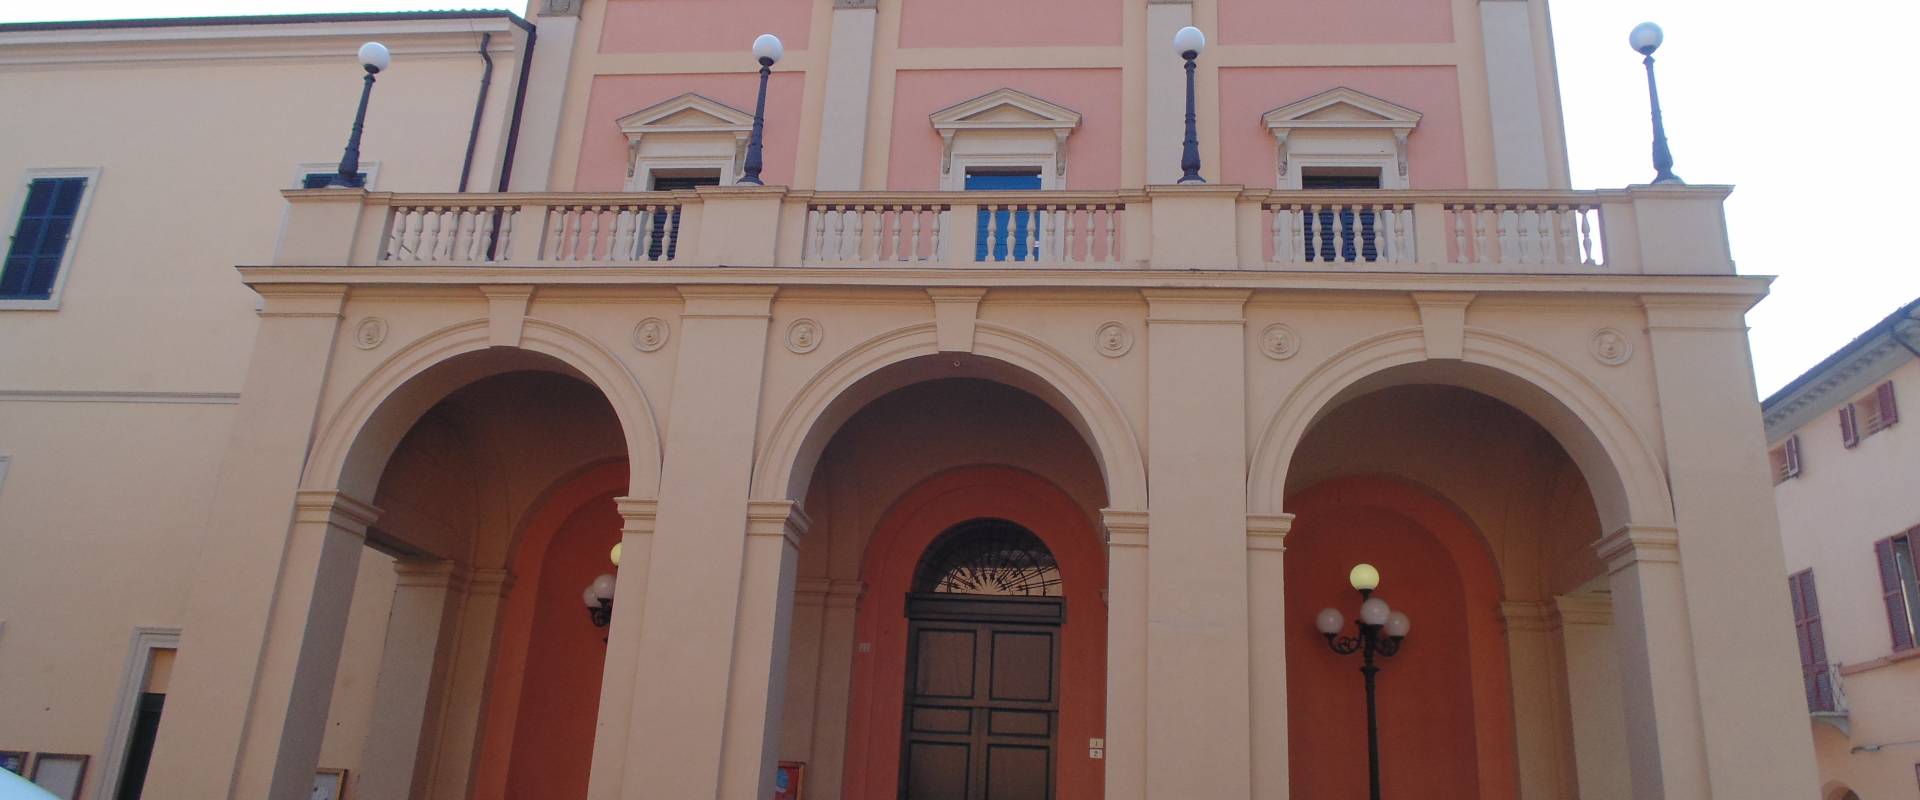 Teatro Comunale (facciata ingresso) foto di Maurolattuga